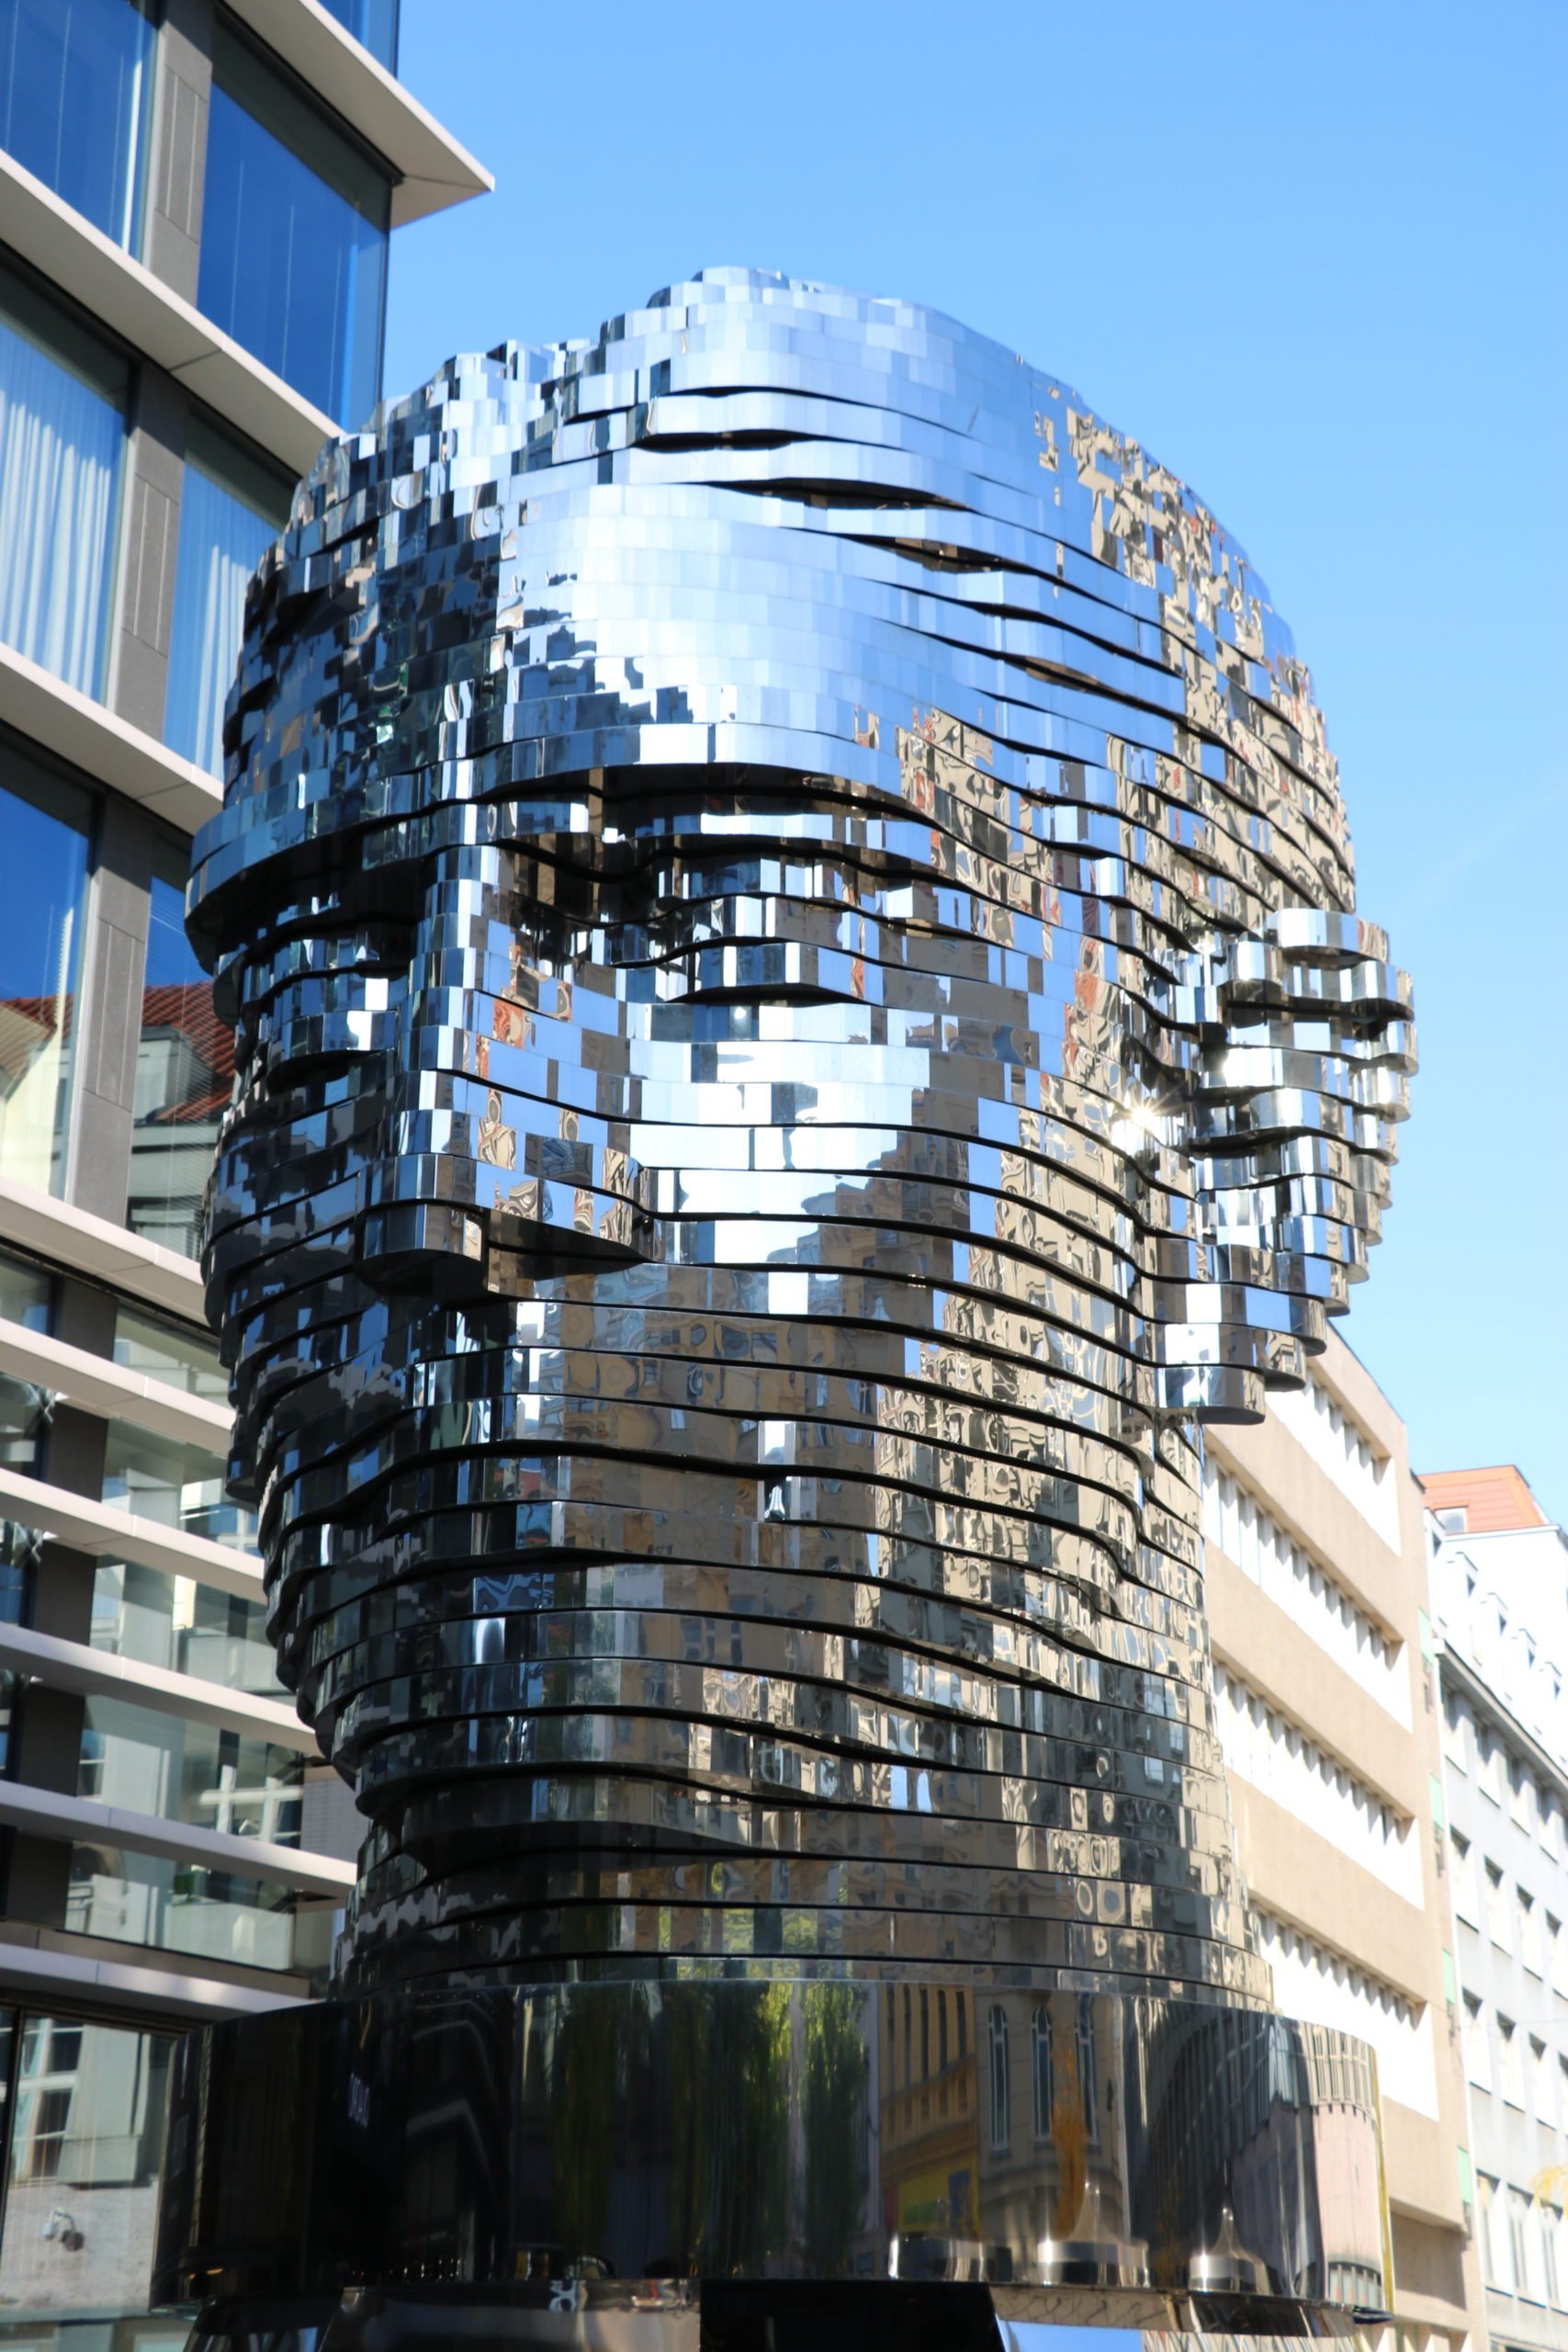 A sculpture of a giant silver head depicting Czech writer Franz Kafka